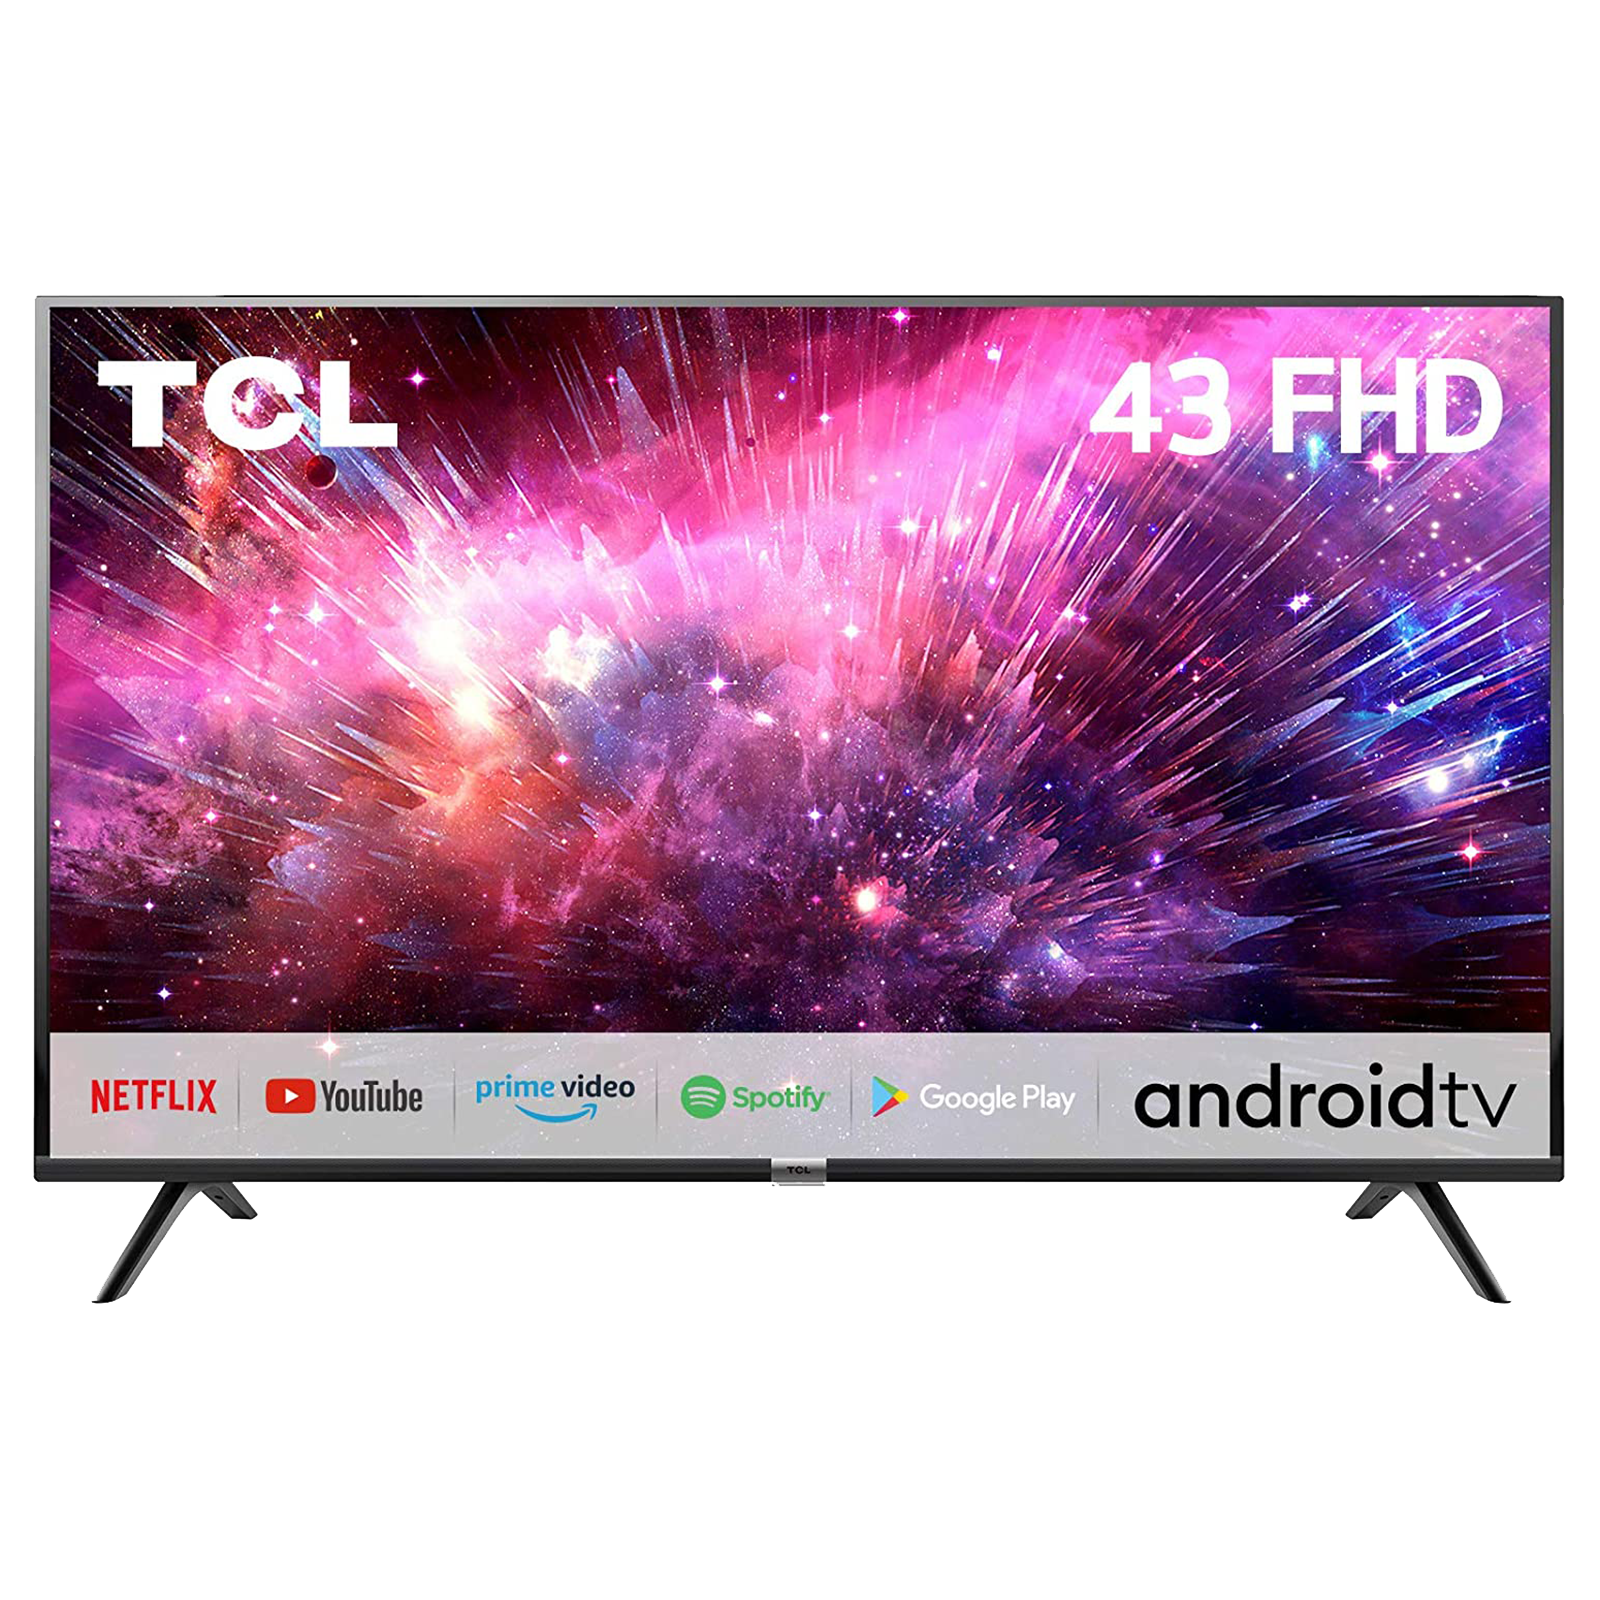 TCL 109 cm (43 inch) Full HD LED Smart TV (43S6500FS, Black)_1